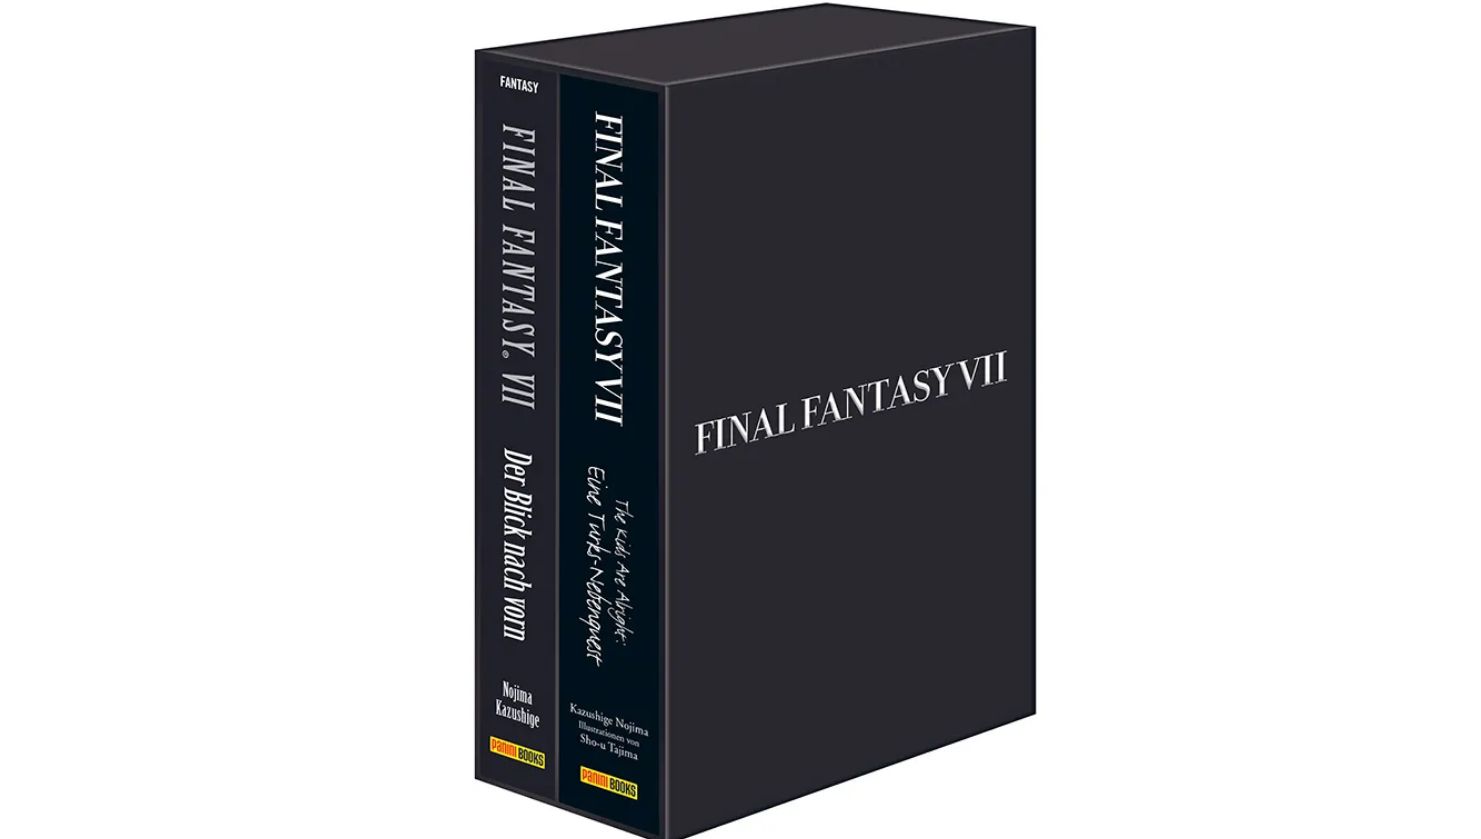 #Final Fantasy VII: Deutschsprachige Romane werden in limitierten Schuber neu aufgelegt